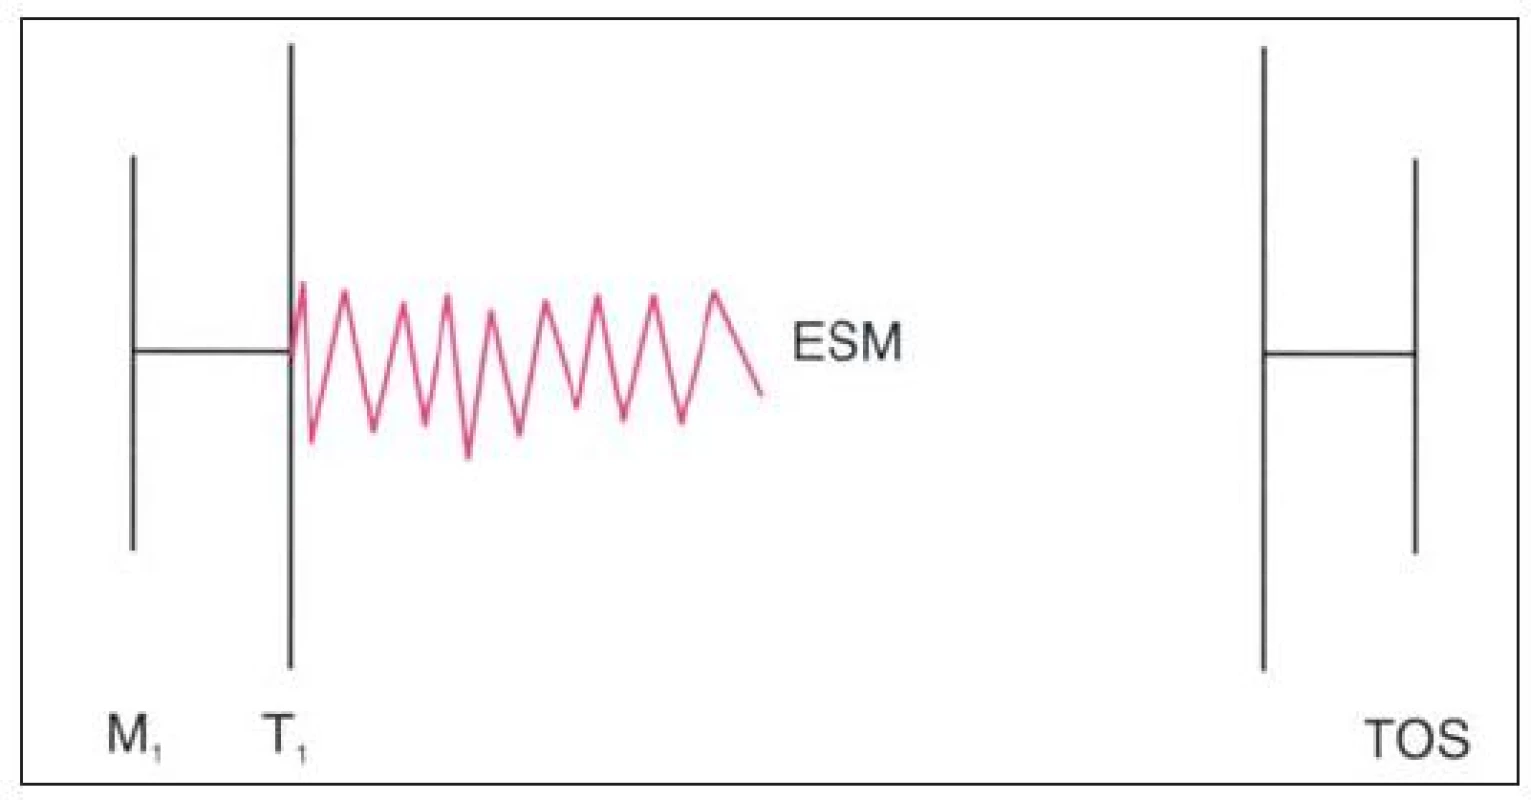 Auskultační nález u Ebsteinovy anomálie komplikované trikuspidální regurgitací. Opožděný zvuk trikuspidálního uzávěru má obvykle „vrzavou“ kvalitu (zvuk plachty).